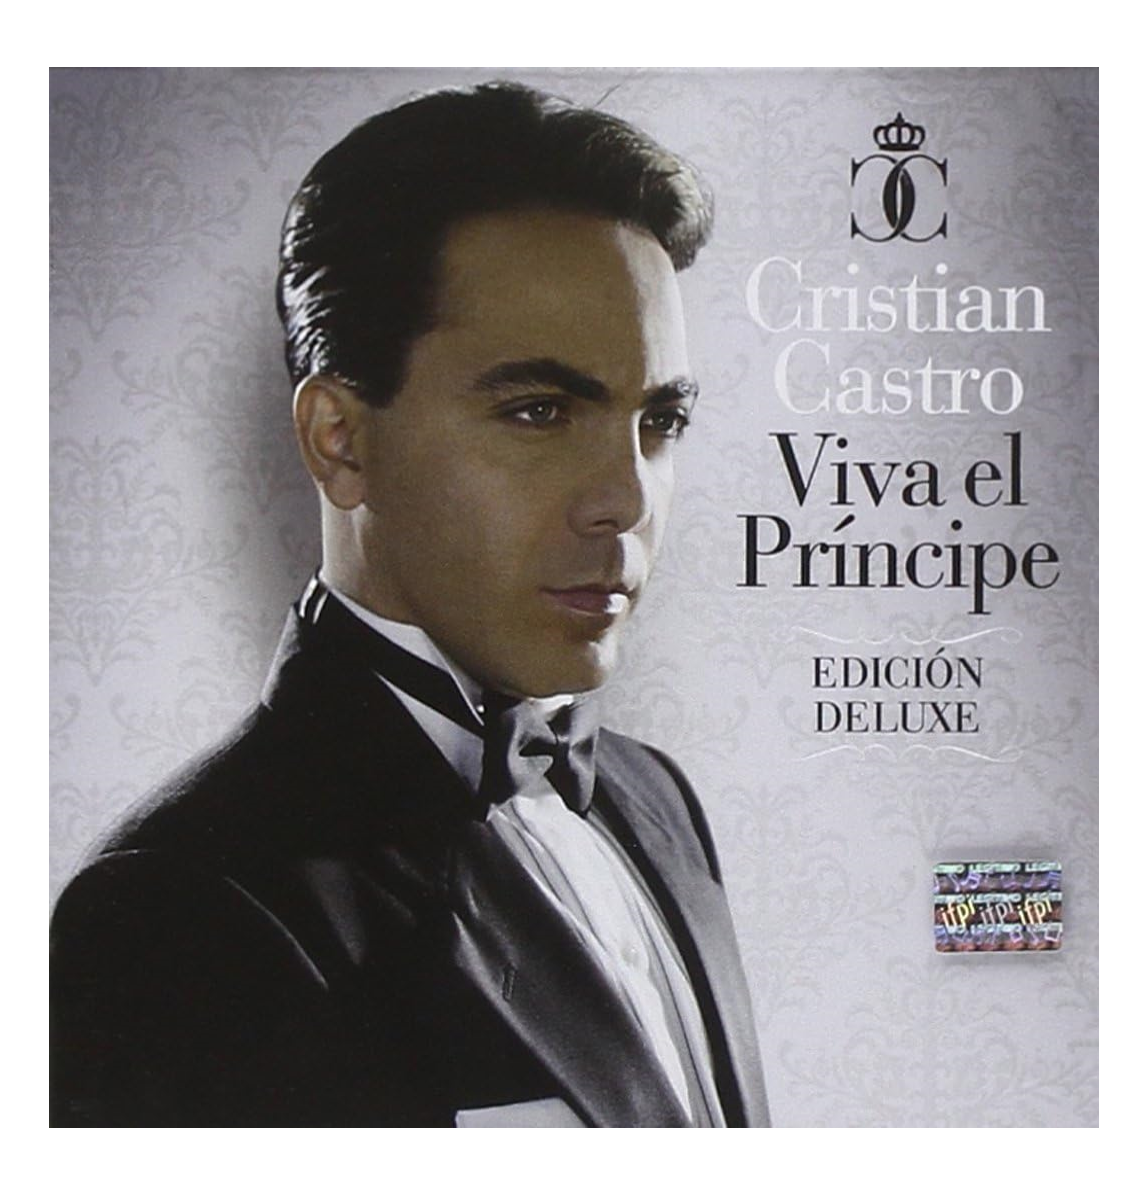 Cristian Castro Viva El Principe Deluxe Disco Cd + Dvd